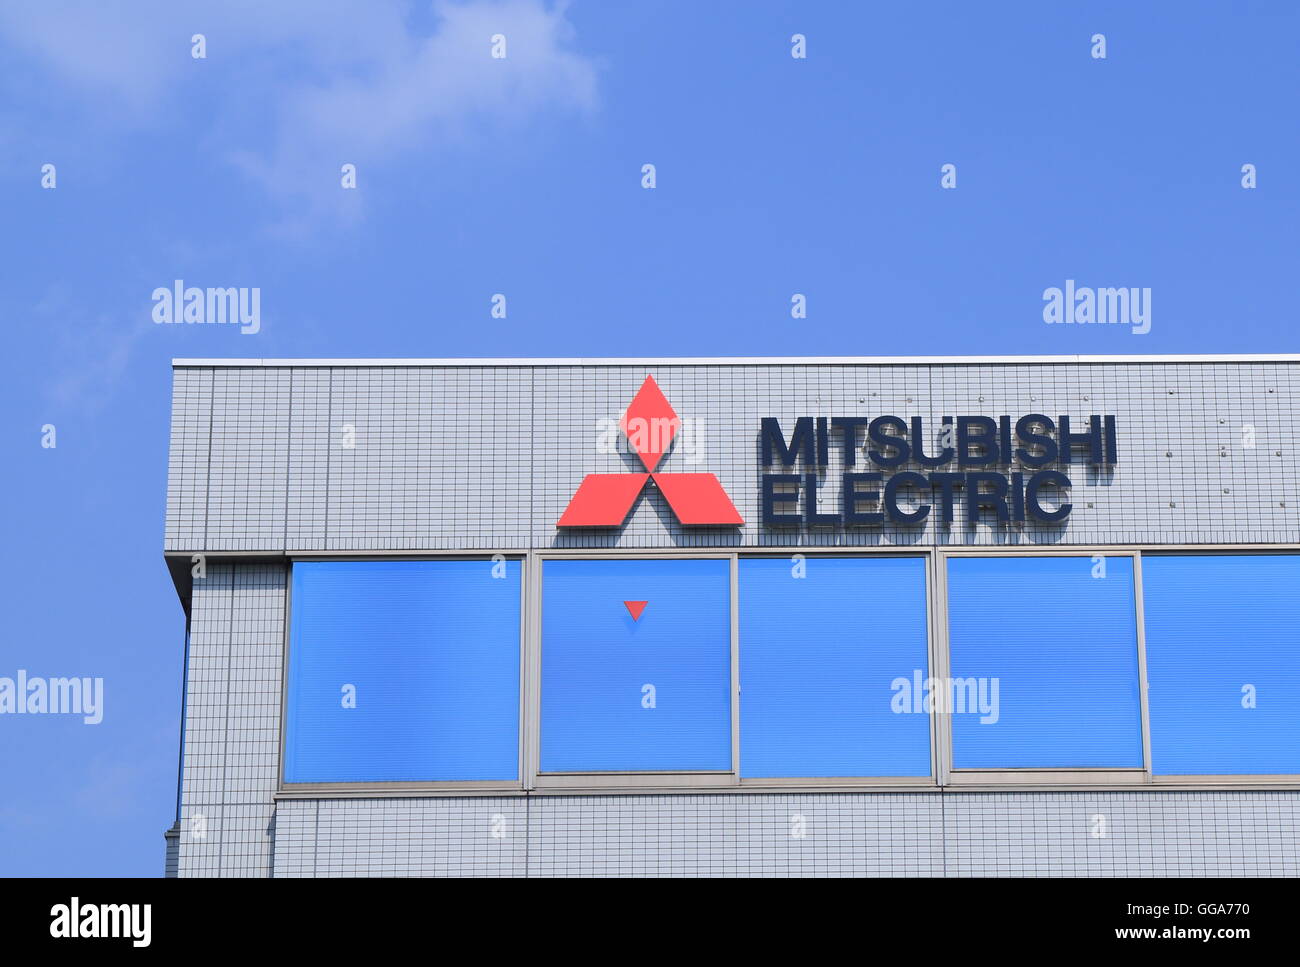 Mitsubishi Electric Company logo une multinationale japonaise de l'électronique et de l'entreprise de la fabrication de matériel électrique. Banque D'Images